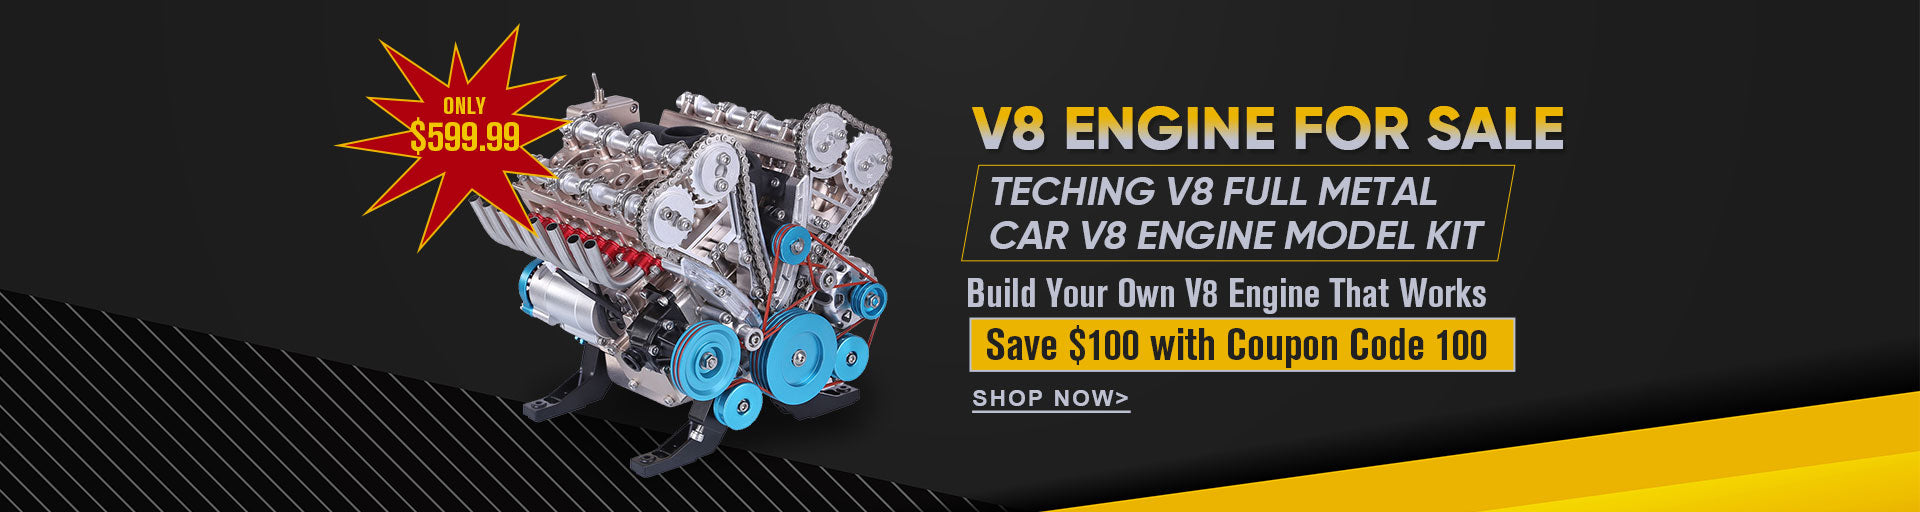 teching v8 engine model kit